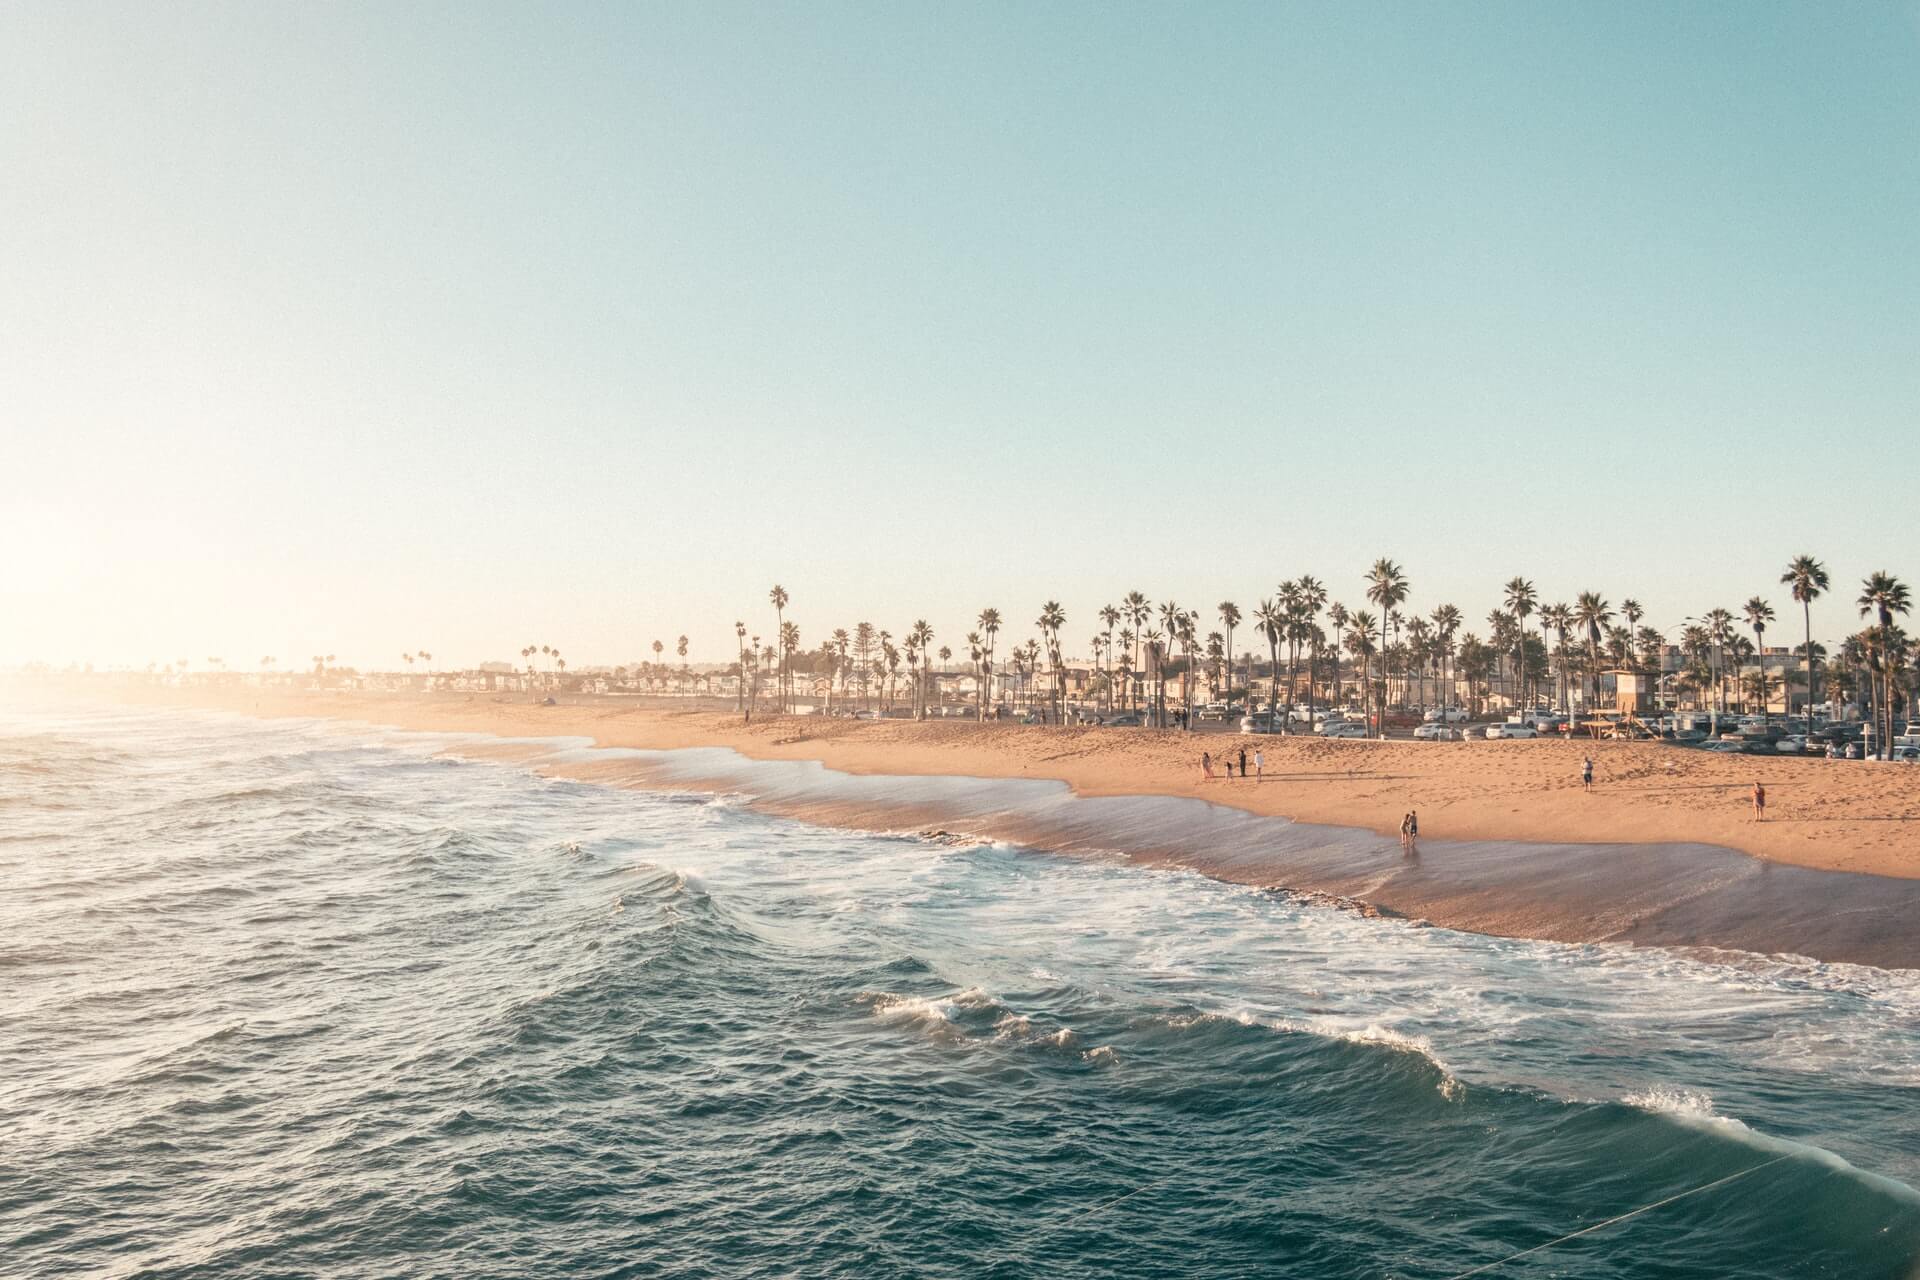 A beach in California, USA.